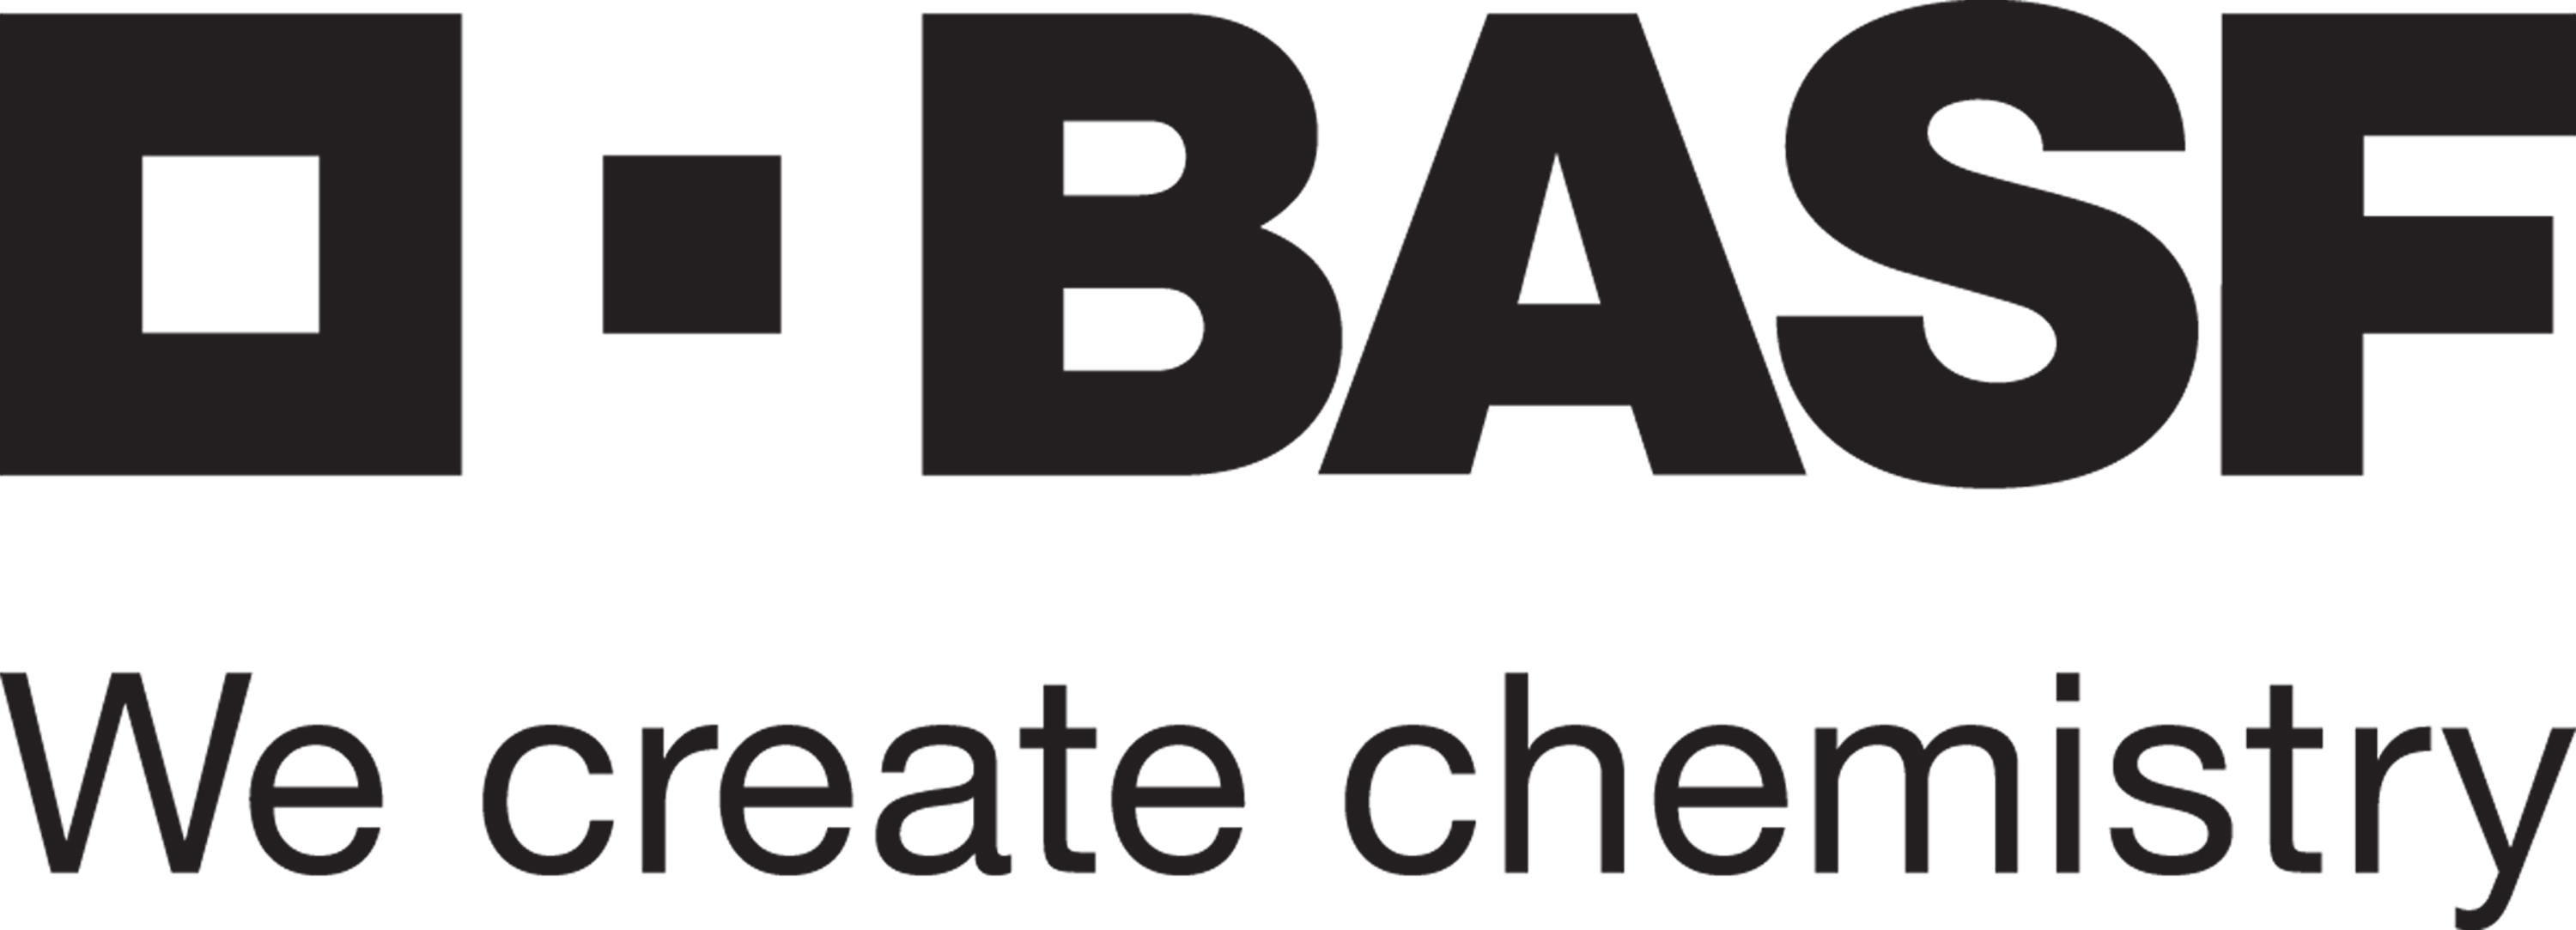 MIG_2016 BASF Logo